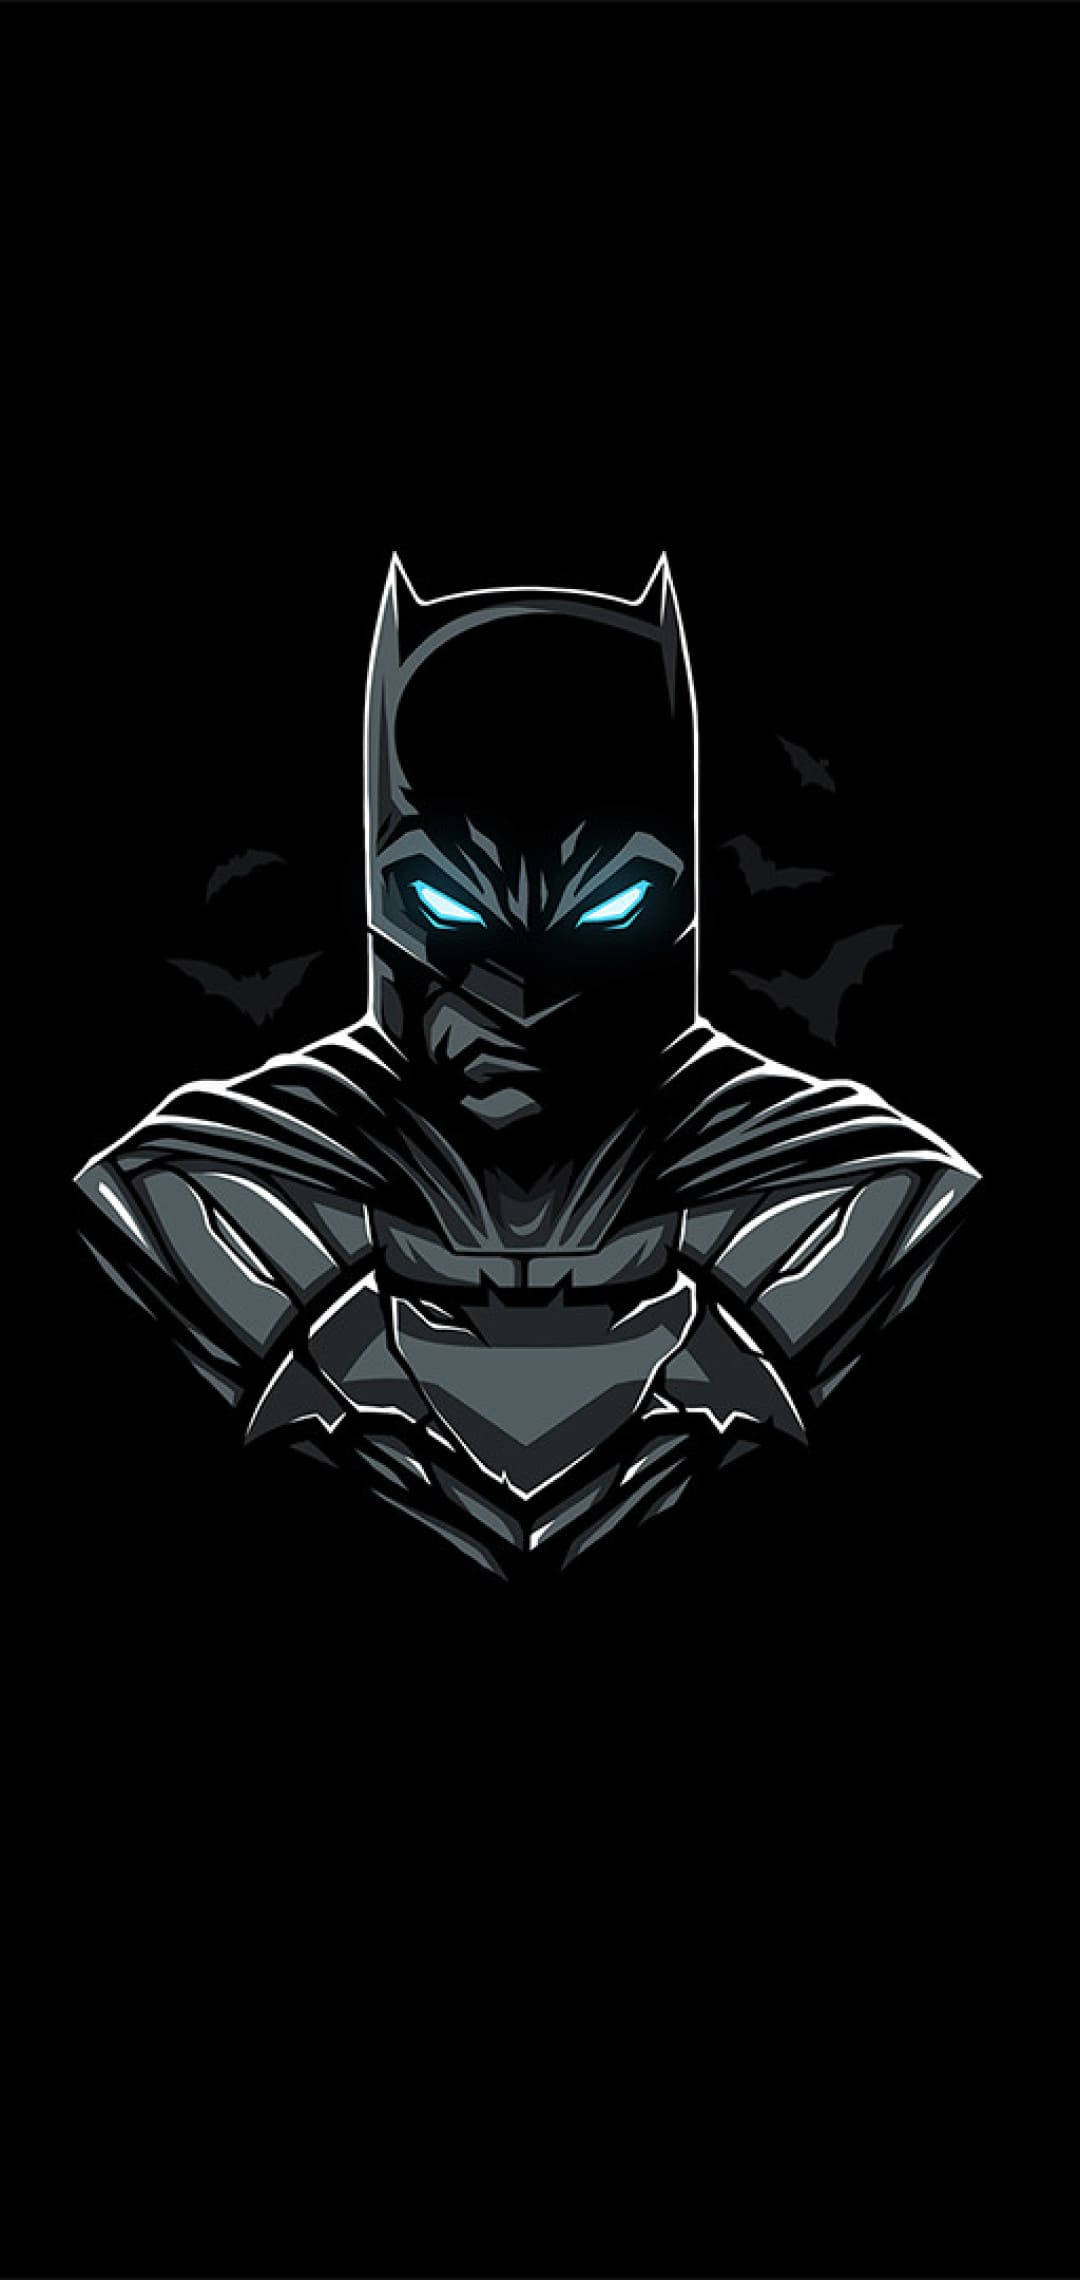 Minimalist Batman Arkham Knight iPhone X Wallpaper